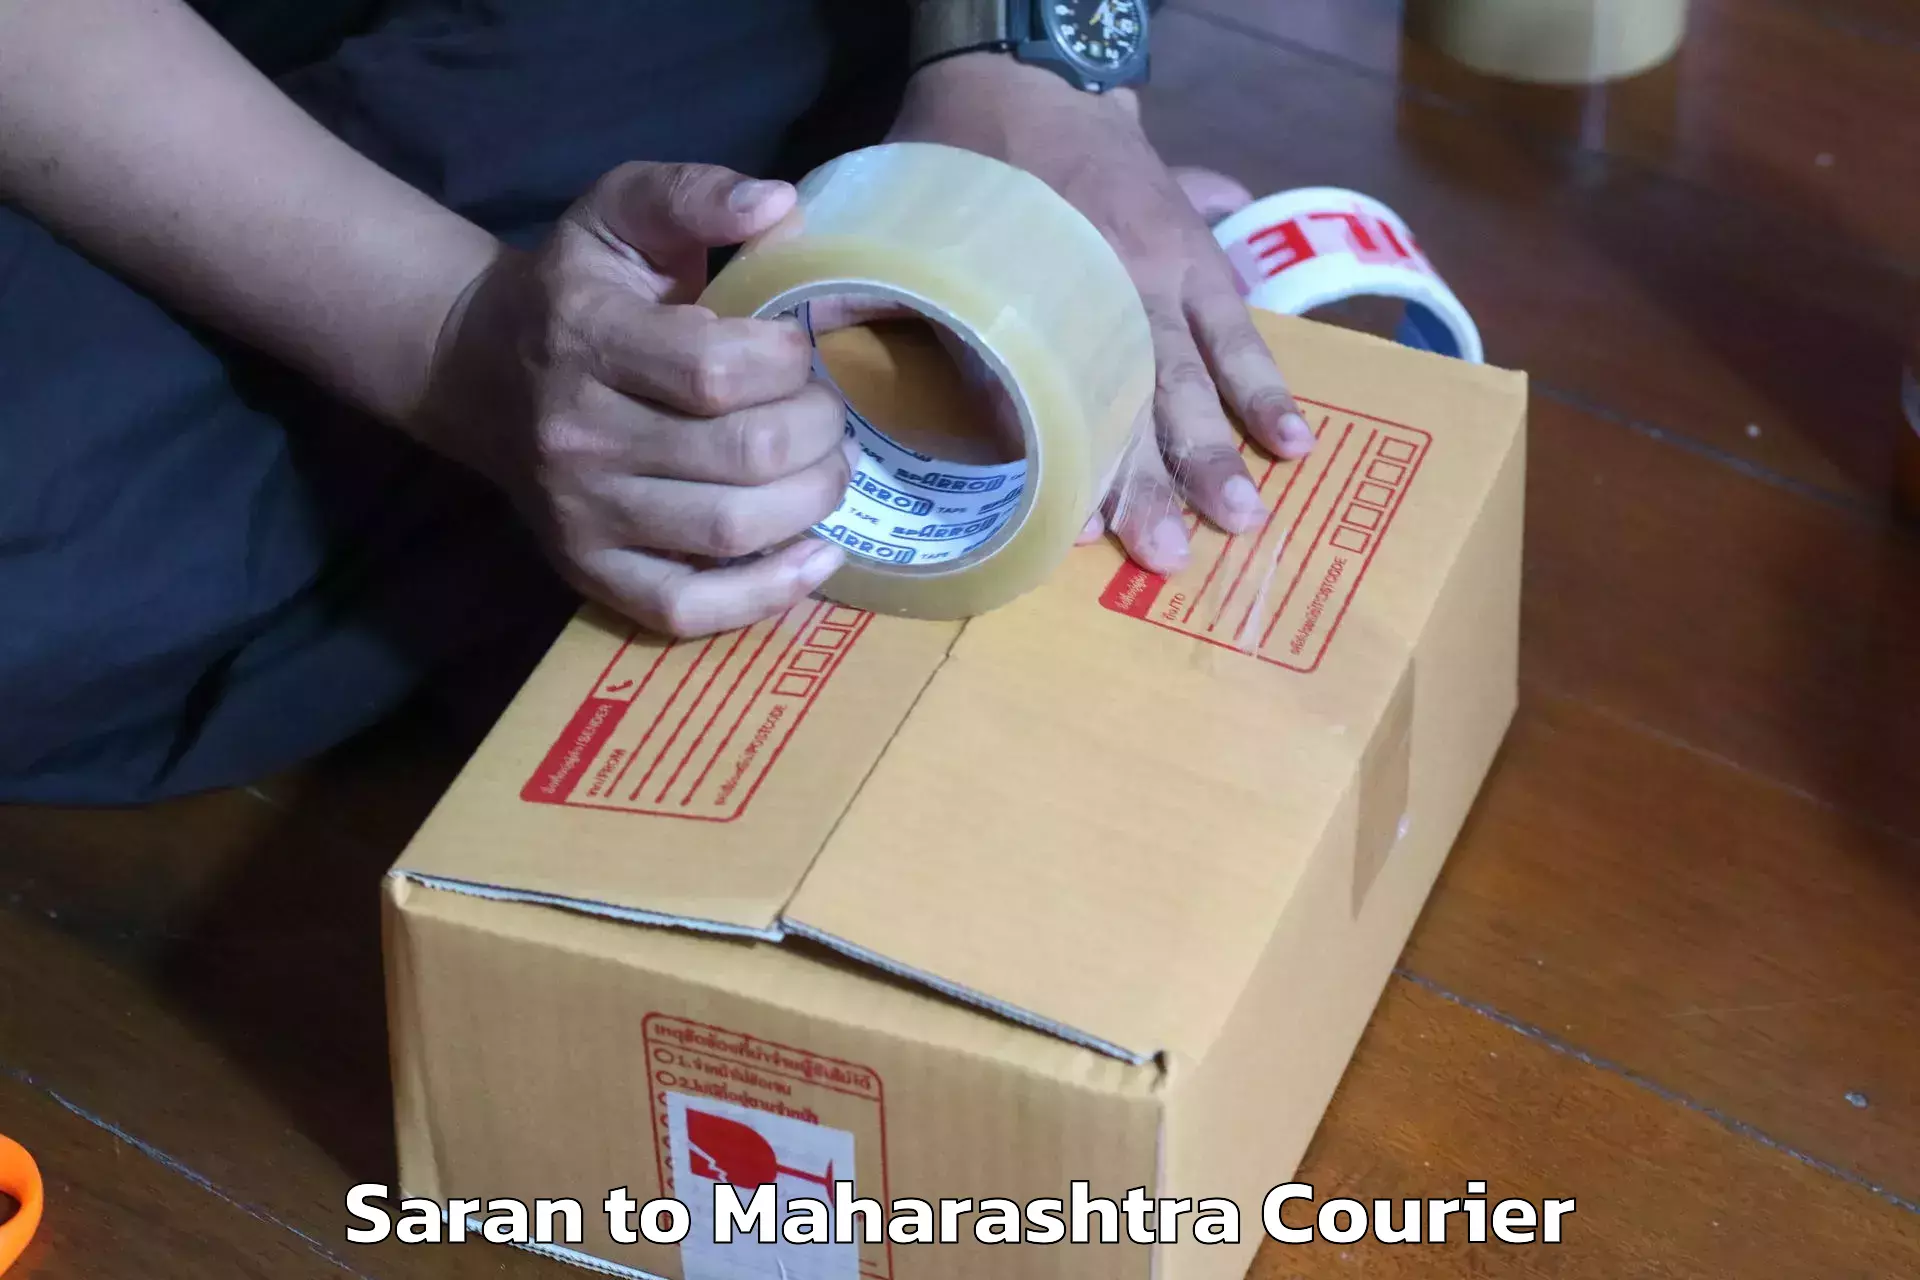 Skilled furniture transporters Saran to Mumbai Port